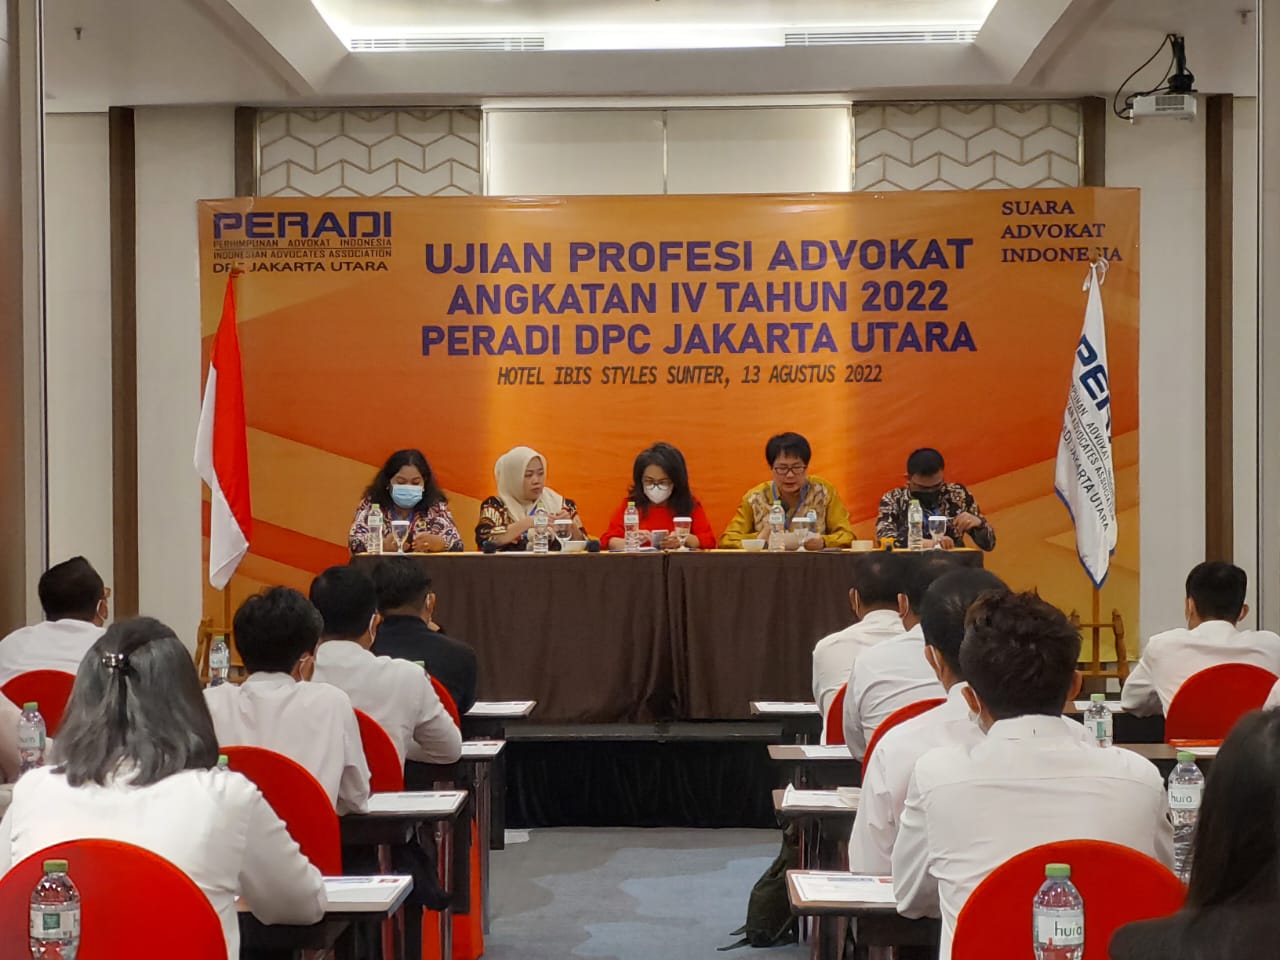 Ujian Profesi Advokat DPC Jakarta Utara - 13 Agustus 2022 (Hotel ibis Styles, Sunter)